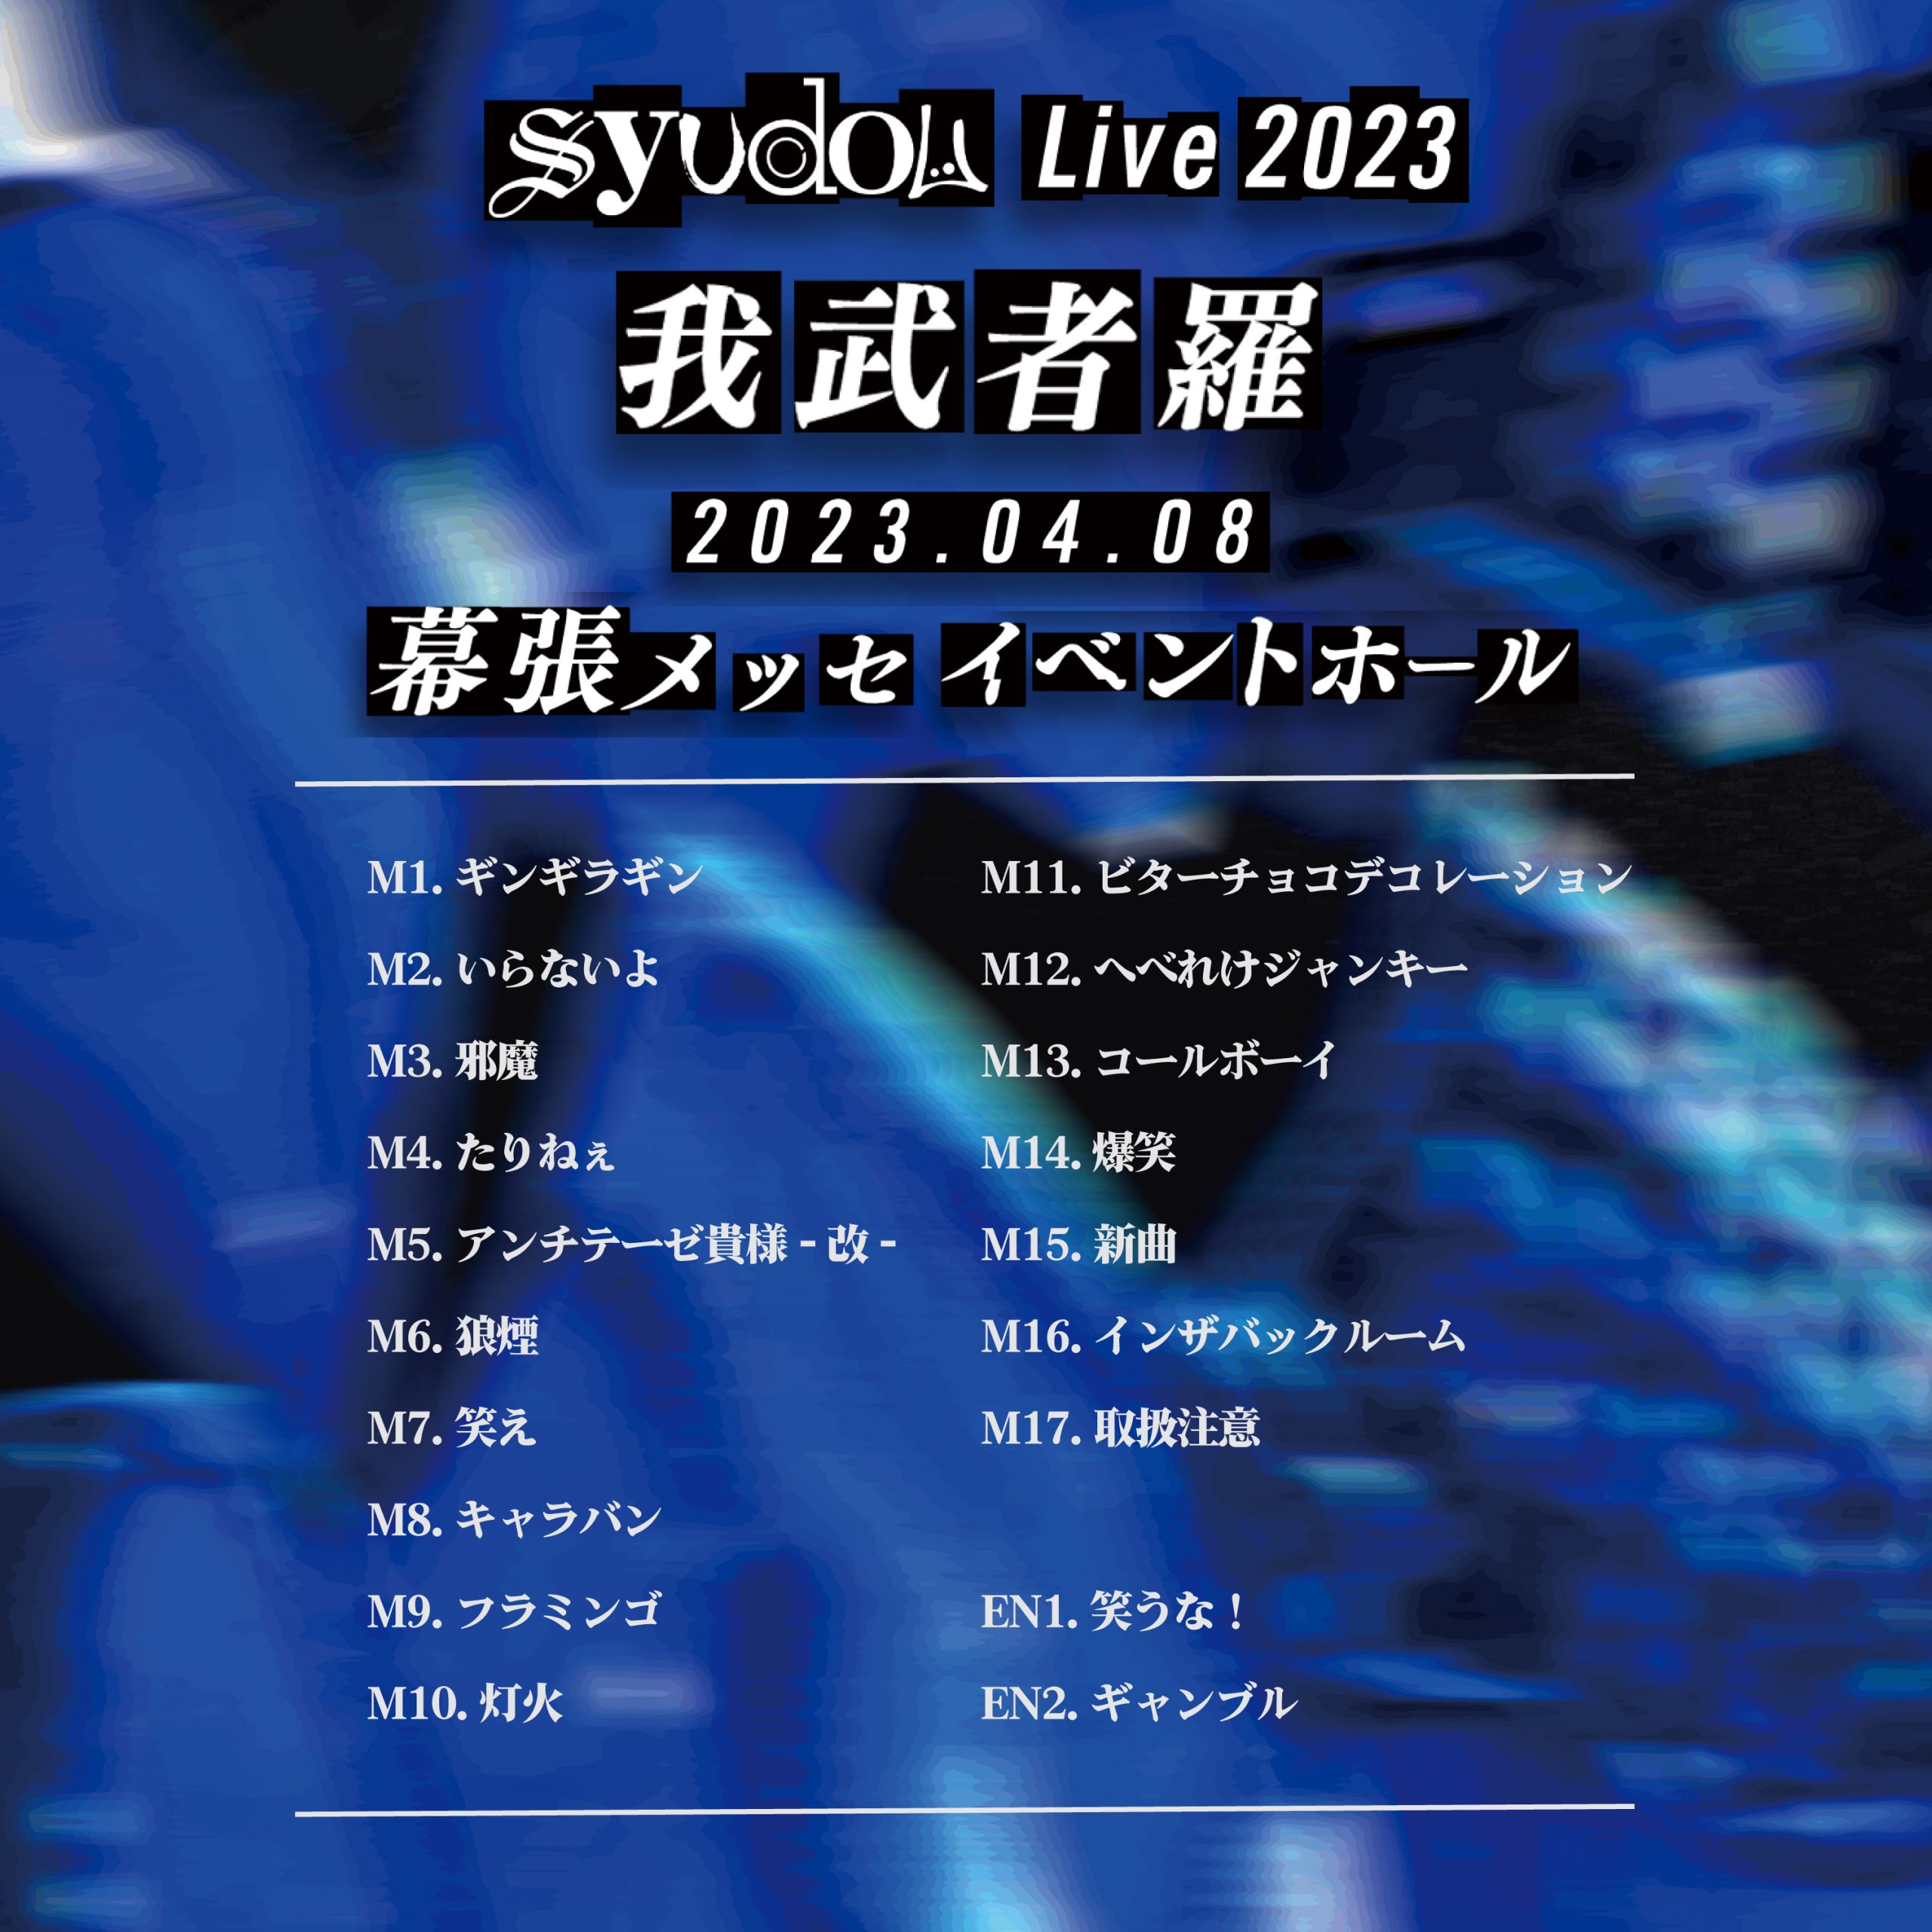 syudou Live 2023「我武者羅」セトリプレイリストを公開 - syudou 